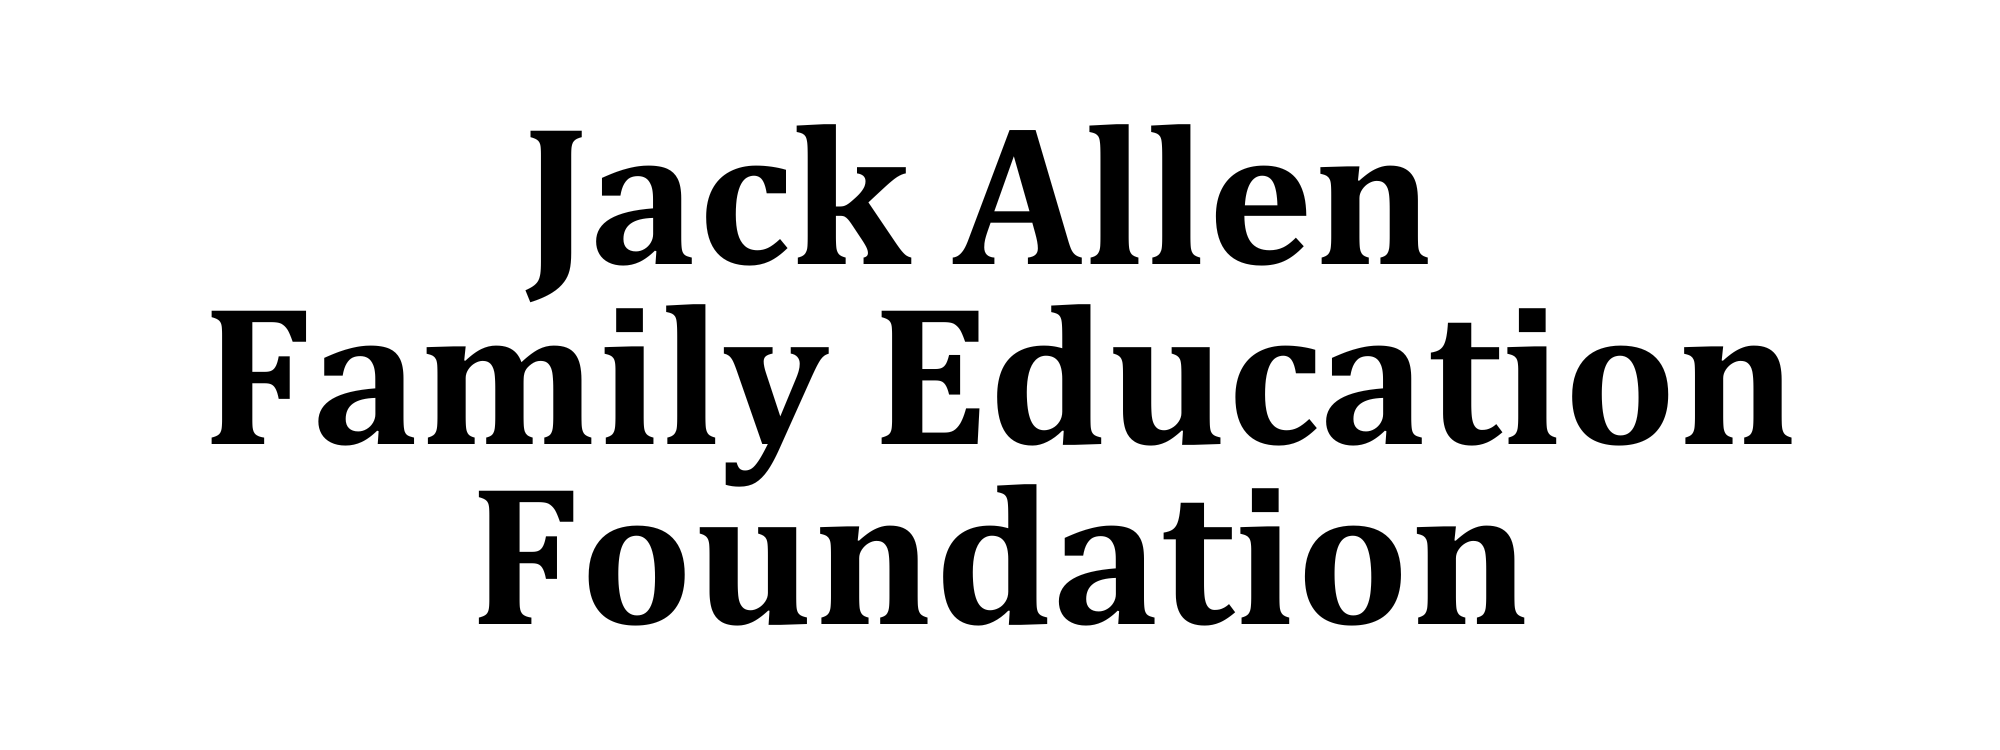 Jack Allen Foundation logo.png